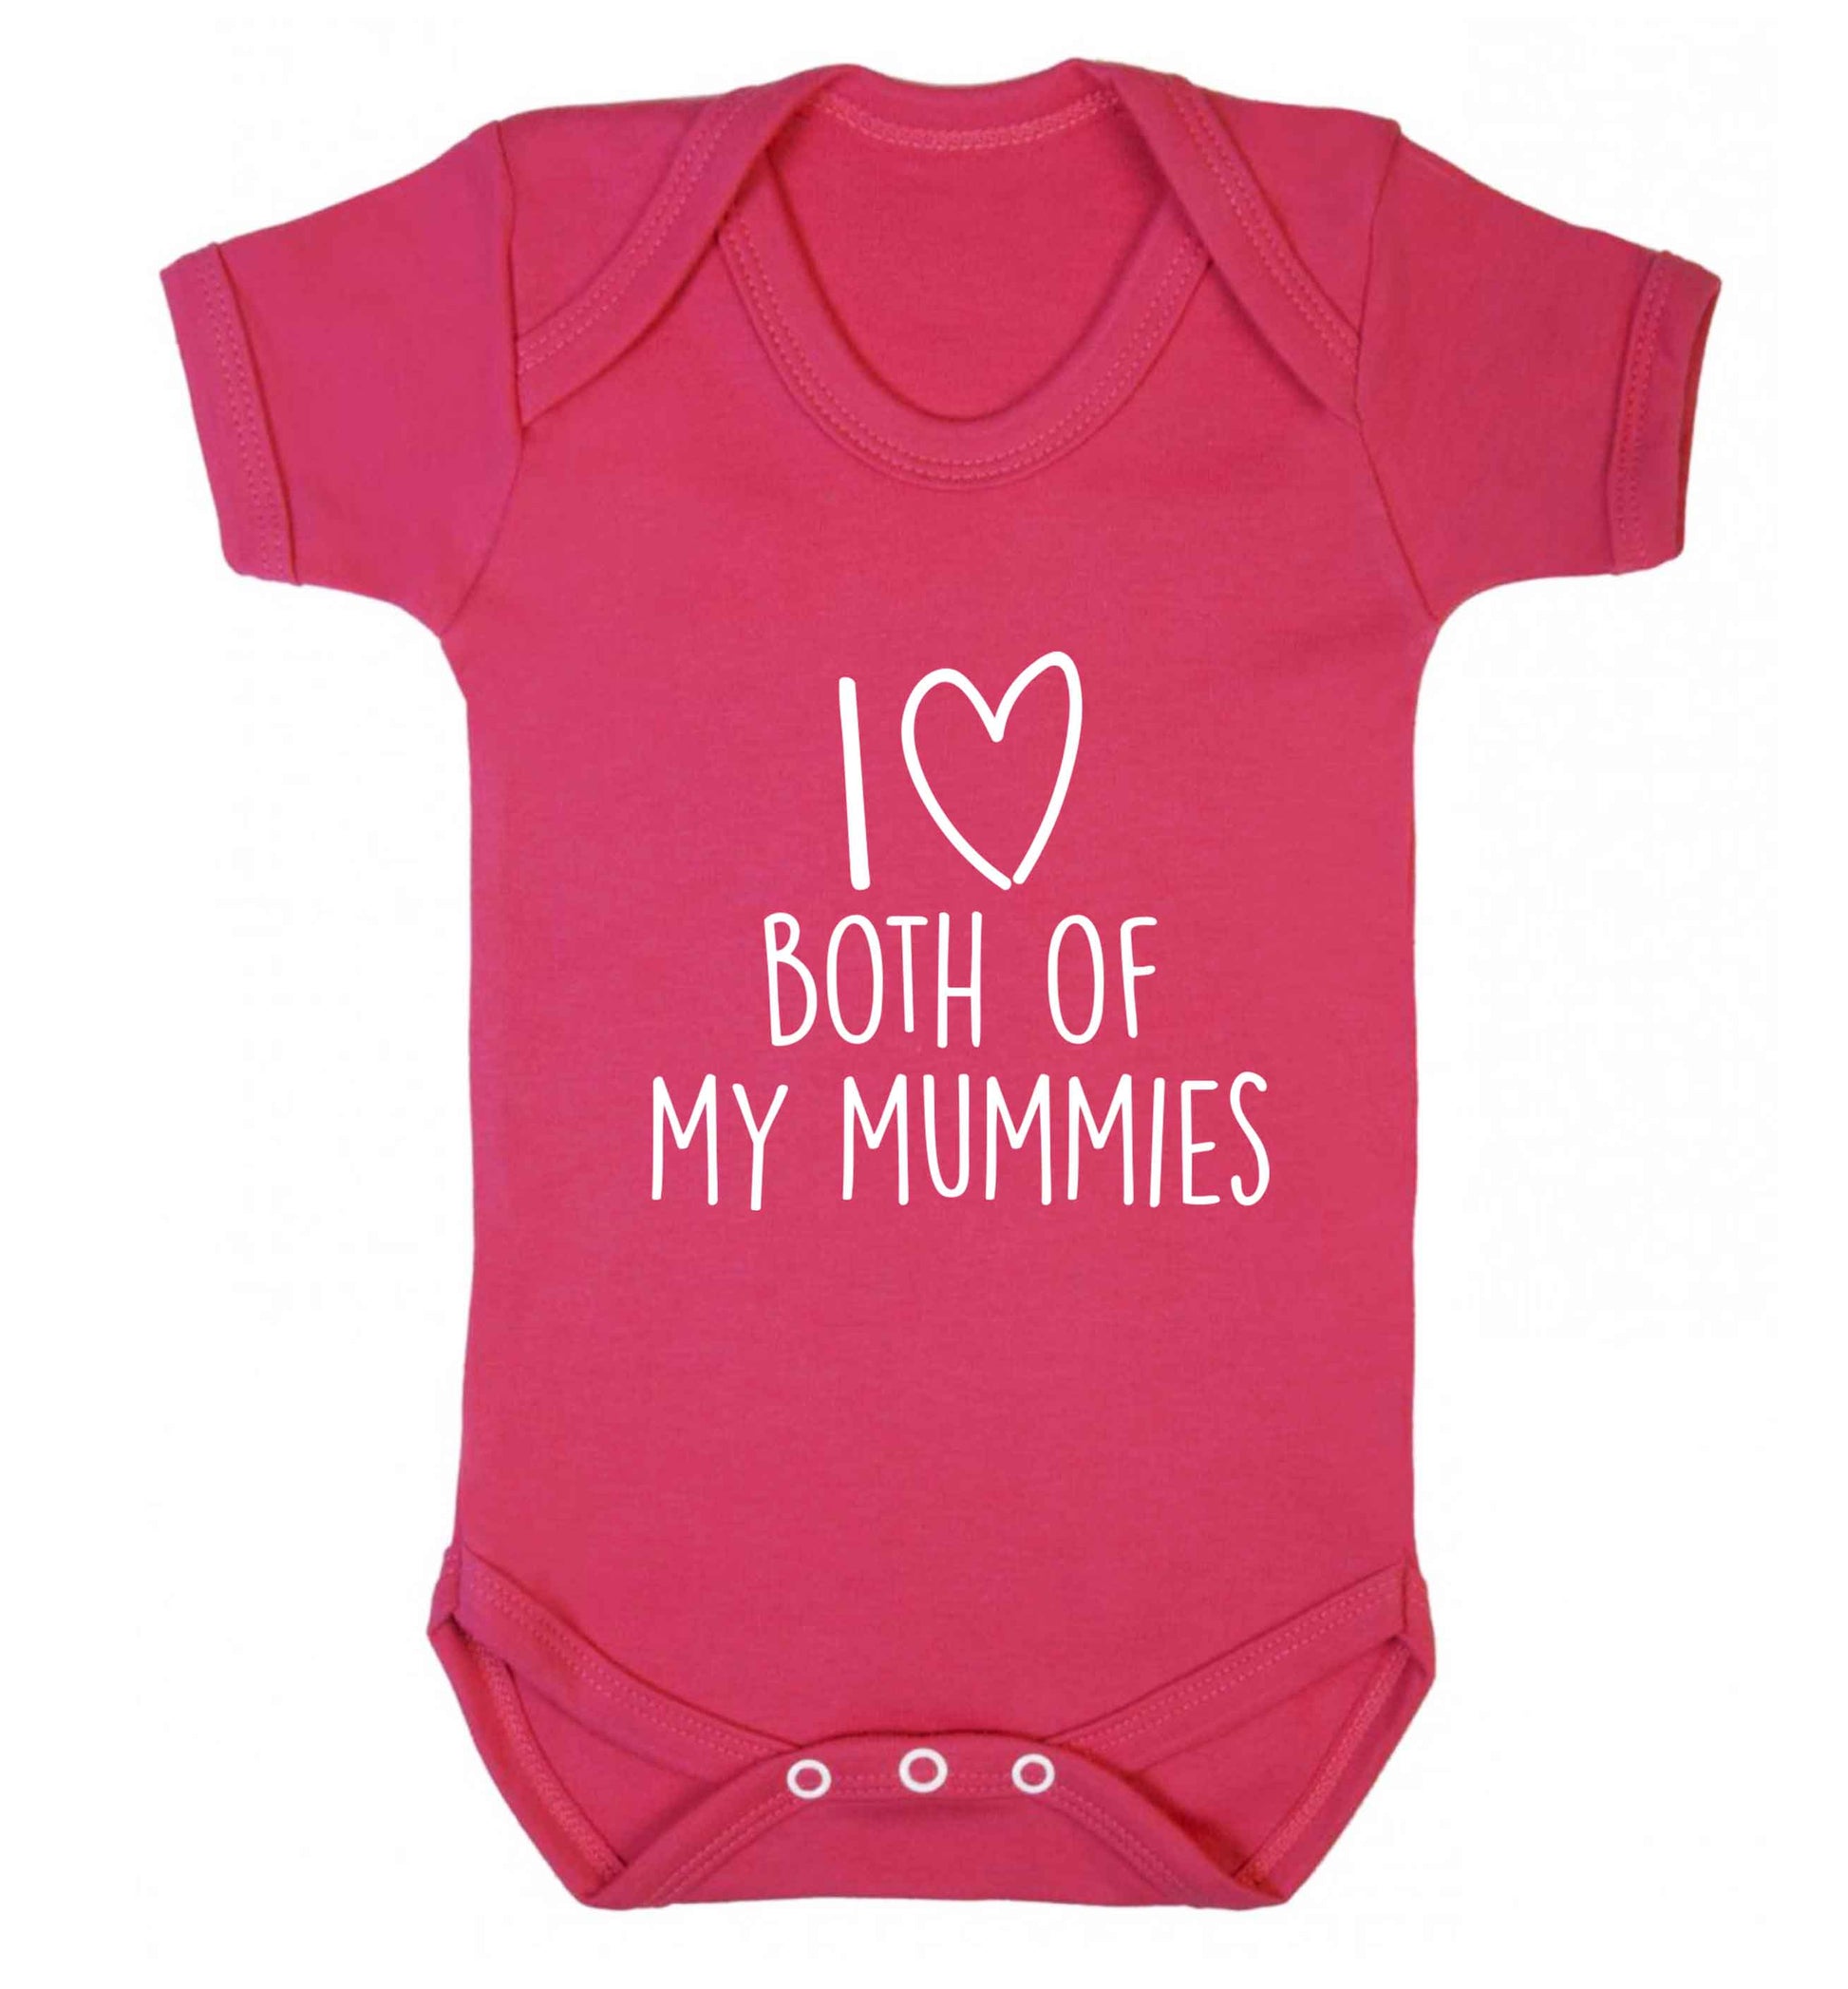 I love both of my mummies baby vest dark pink 18-24 months